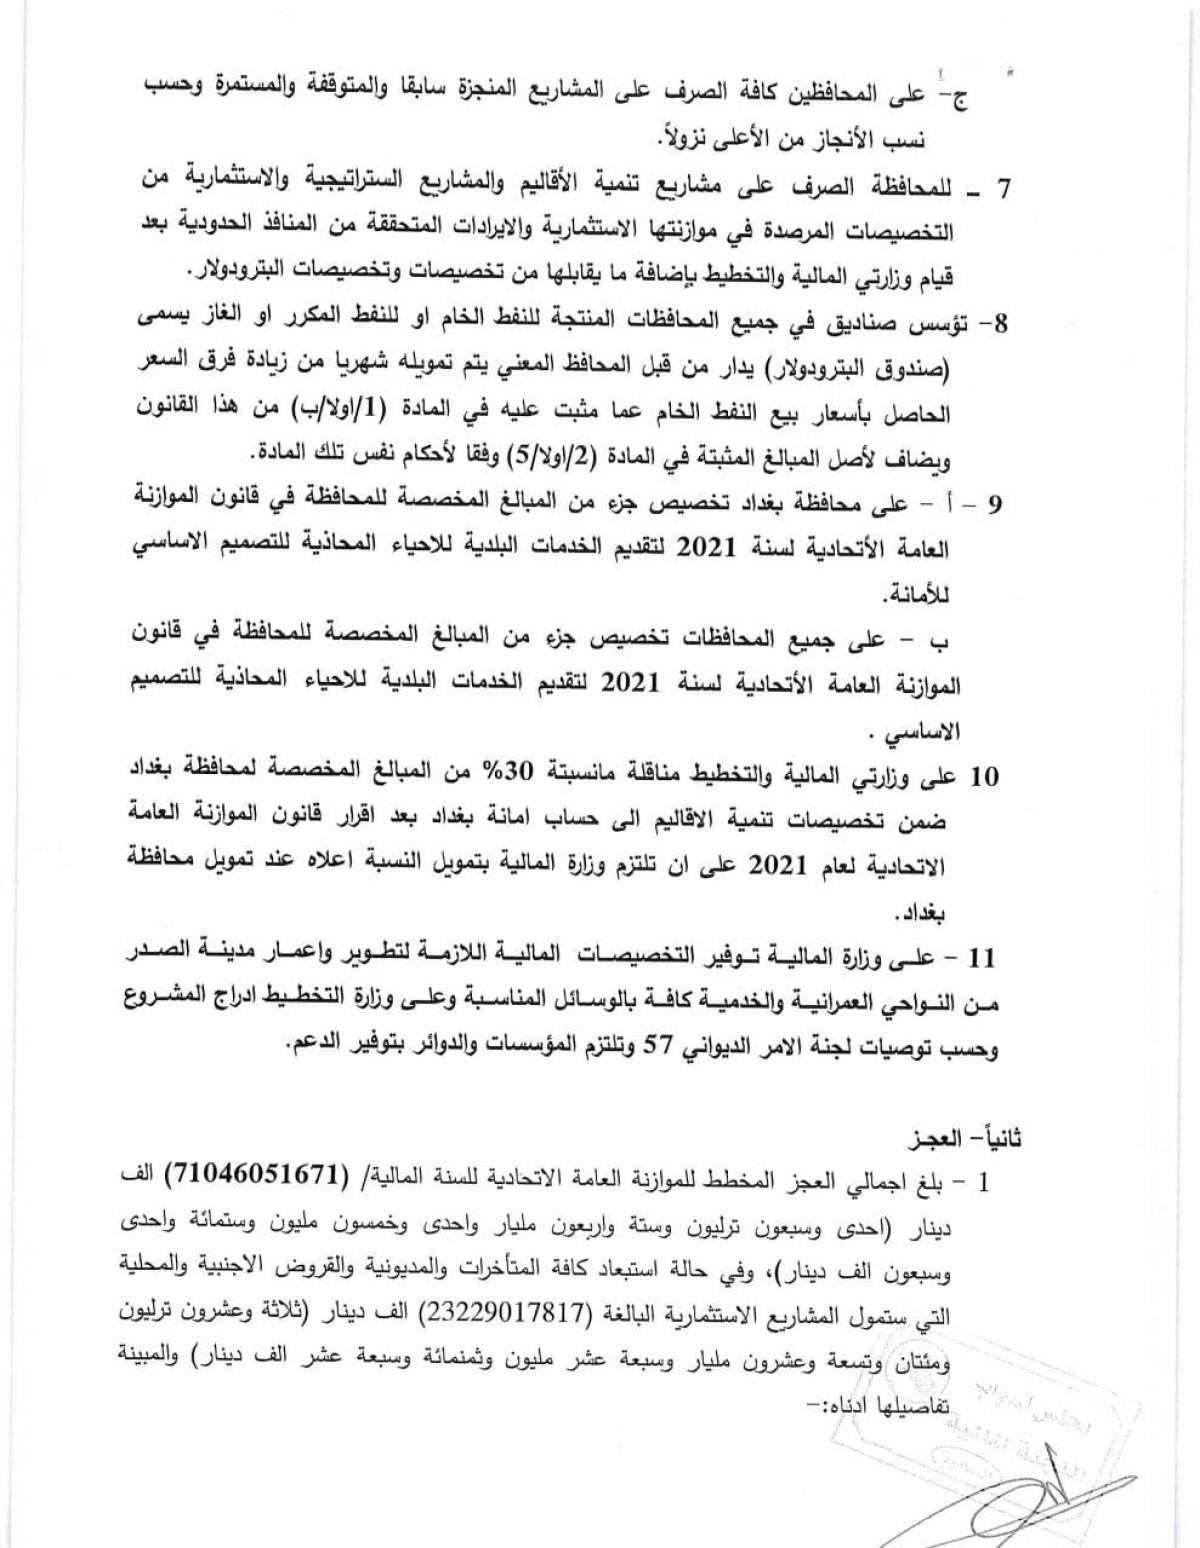 صحيفة العراق تنشر نص قانون الموازنة